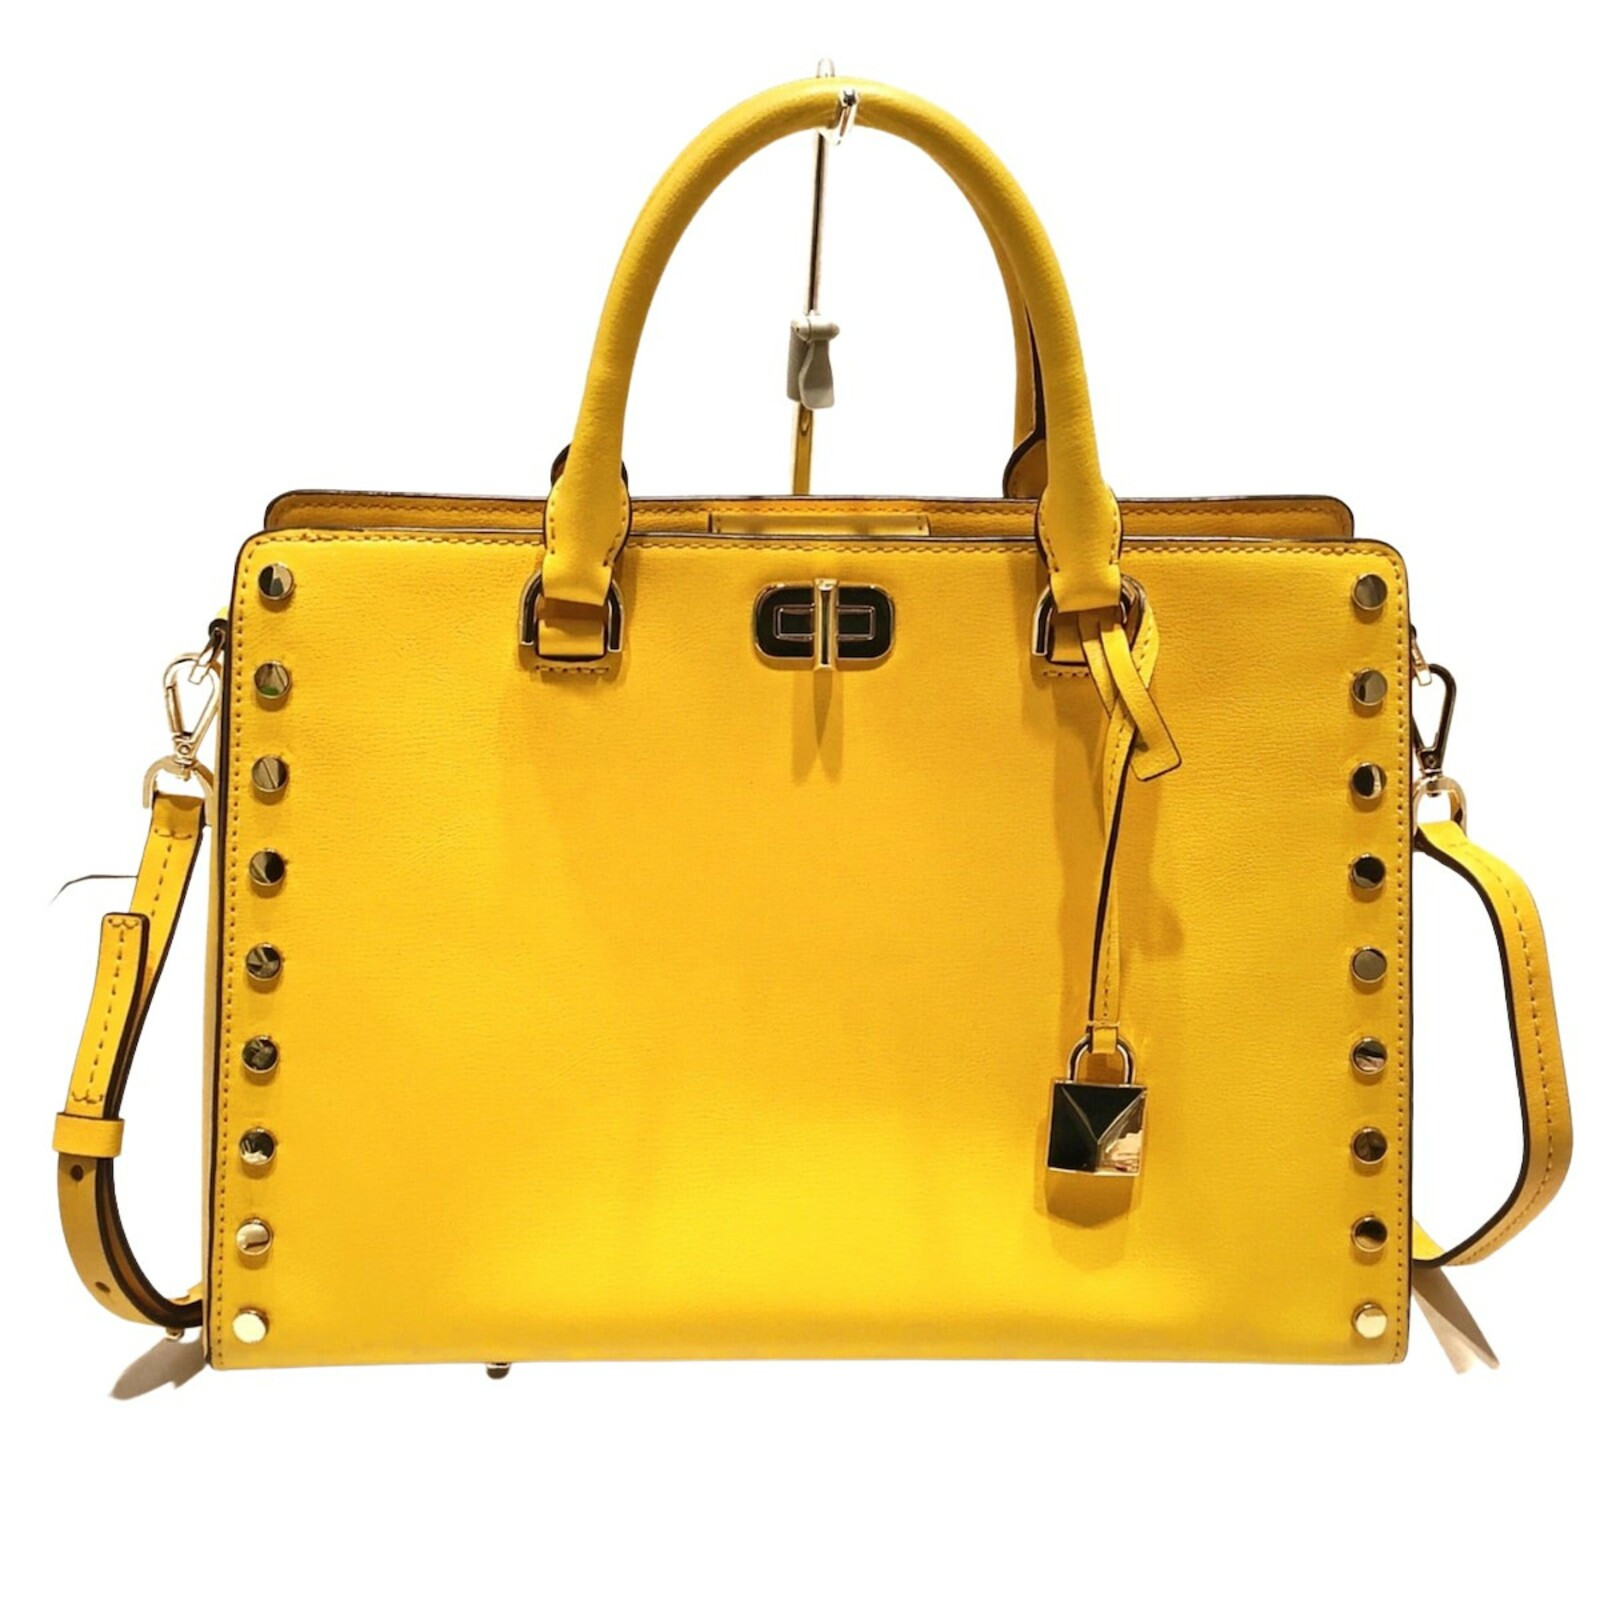 MICHAEL KORS Women's Handtasche aus Leder in Gelb